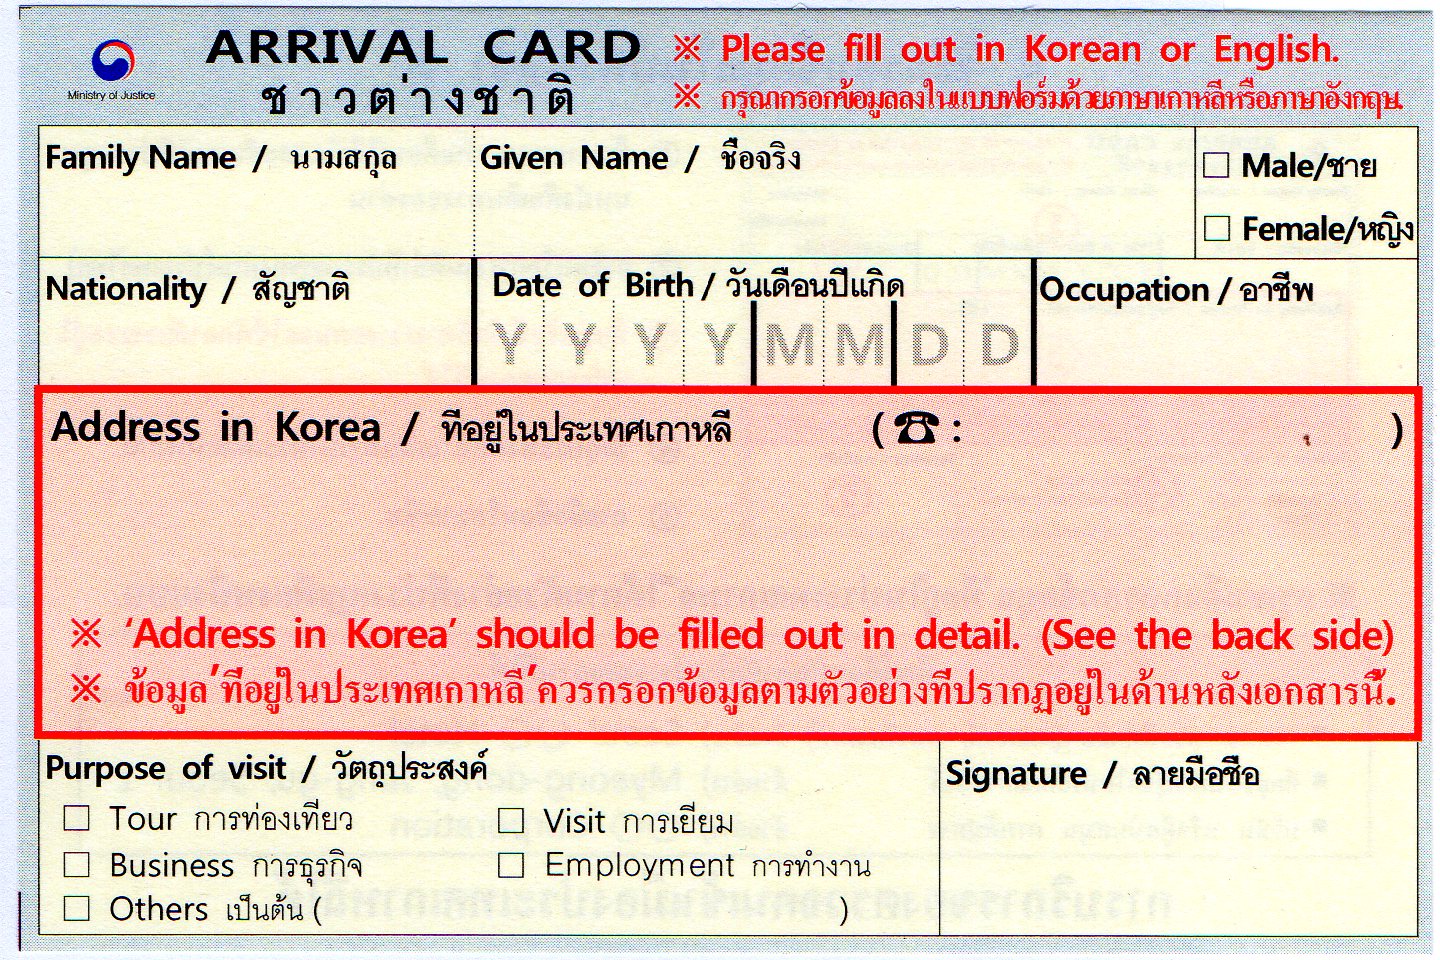 ใบ ตม.เกาหลี แบบใหม่ เอาใจนักท่องเที่ยวชาวไทย เที่ยวเกาหลี